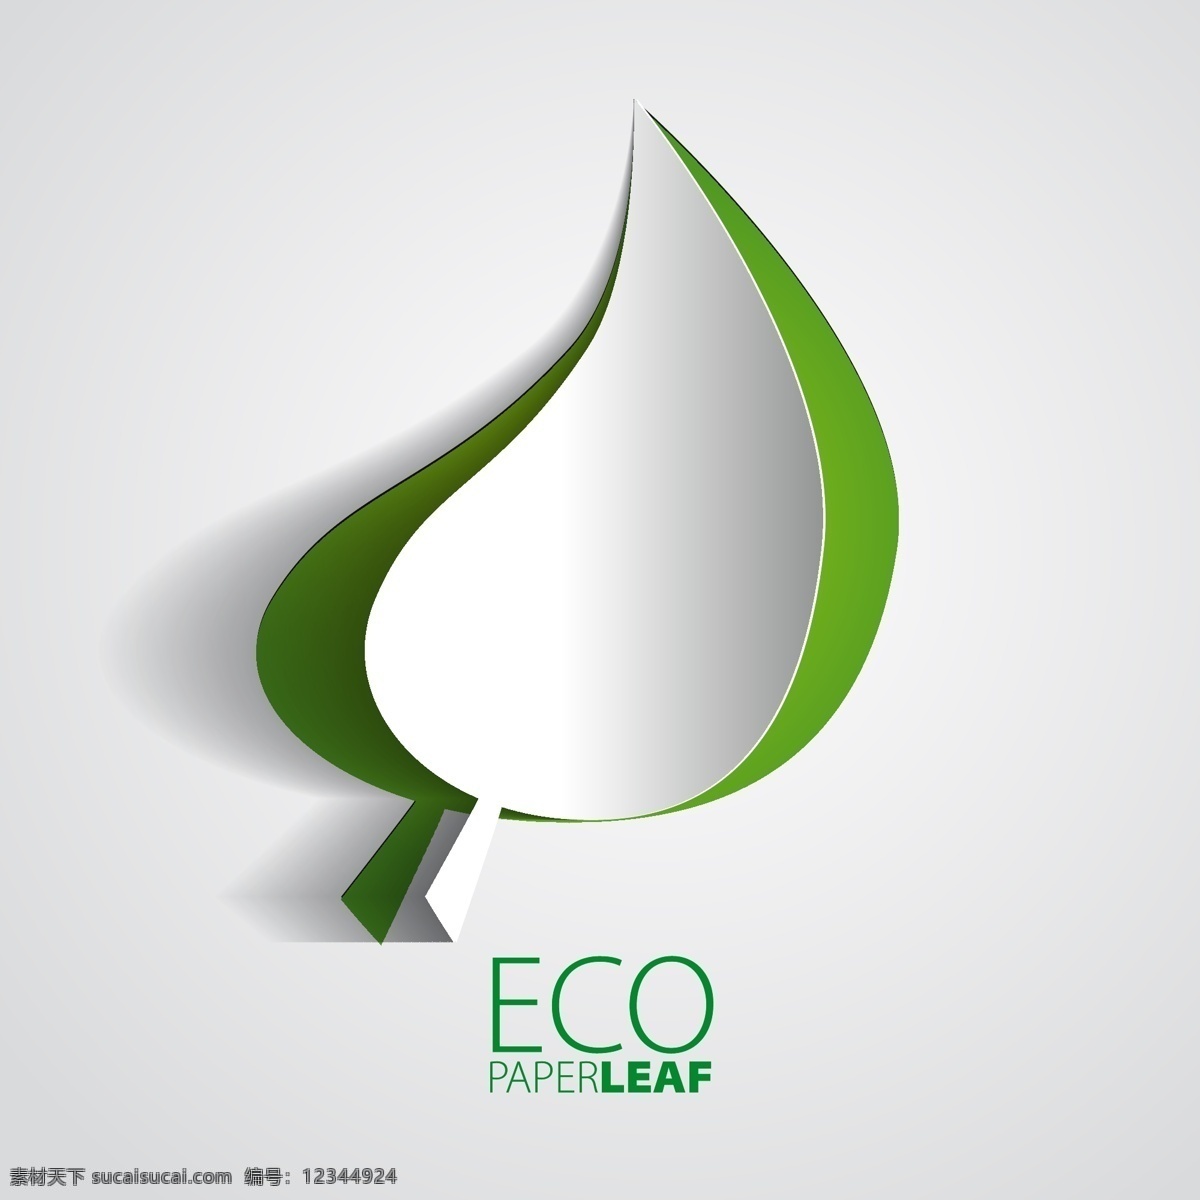 立体树叶背景 树叶 环保 生态 环保标志 绿色环保 标签 标志图标 矢量素材 白色